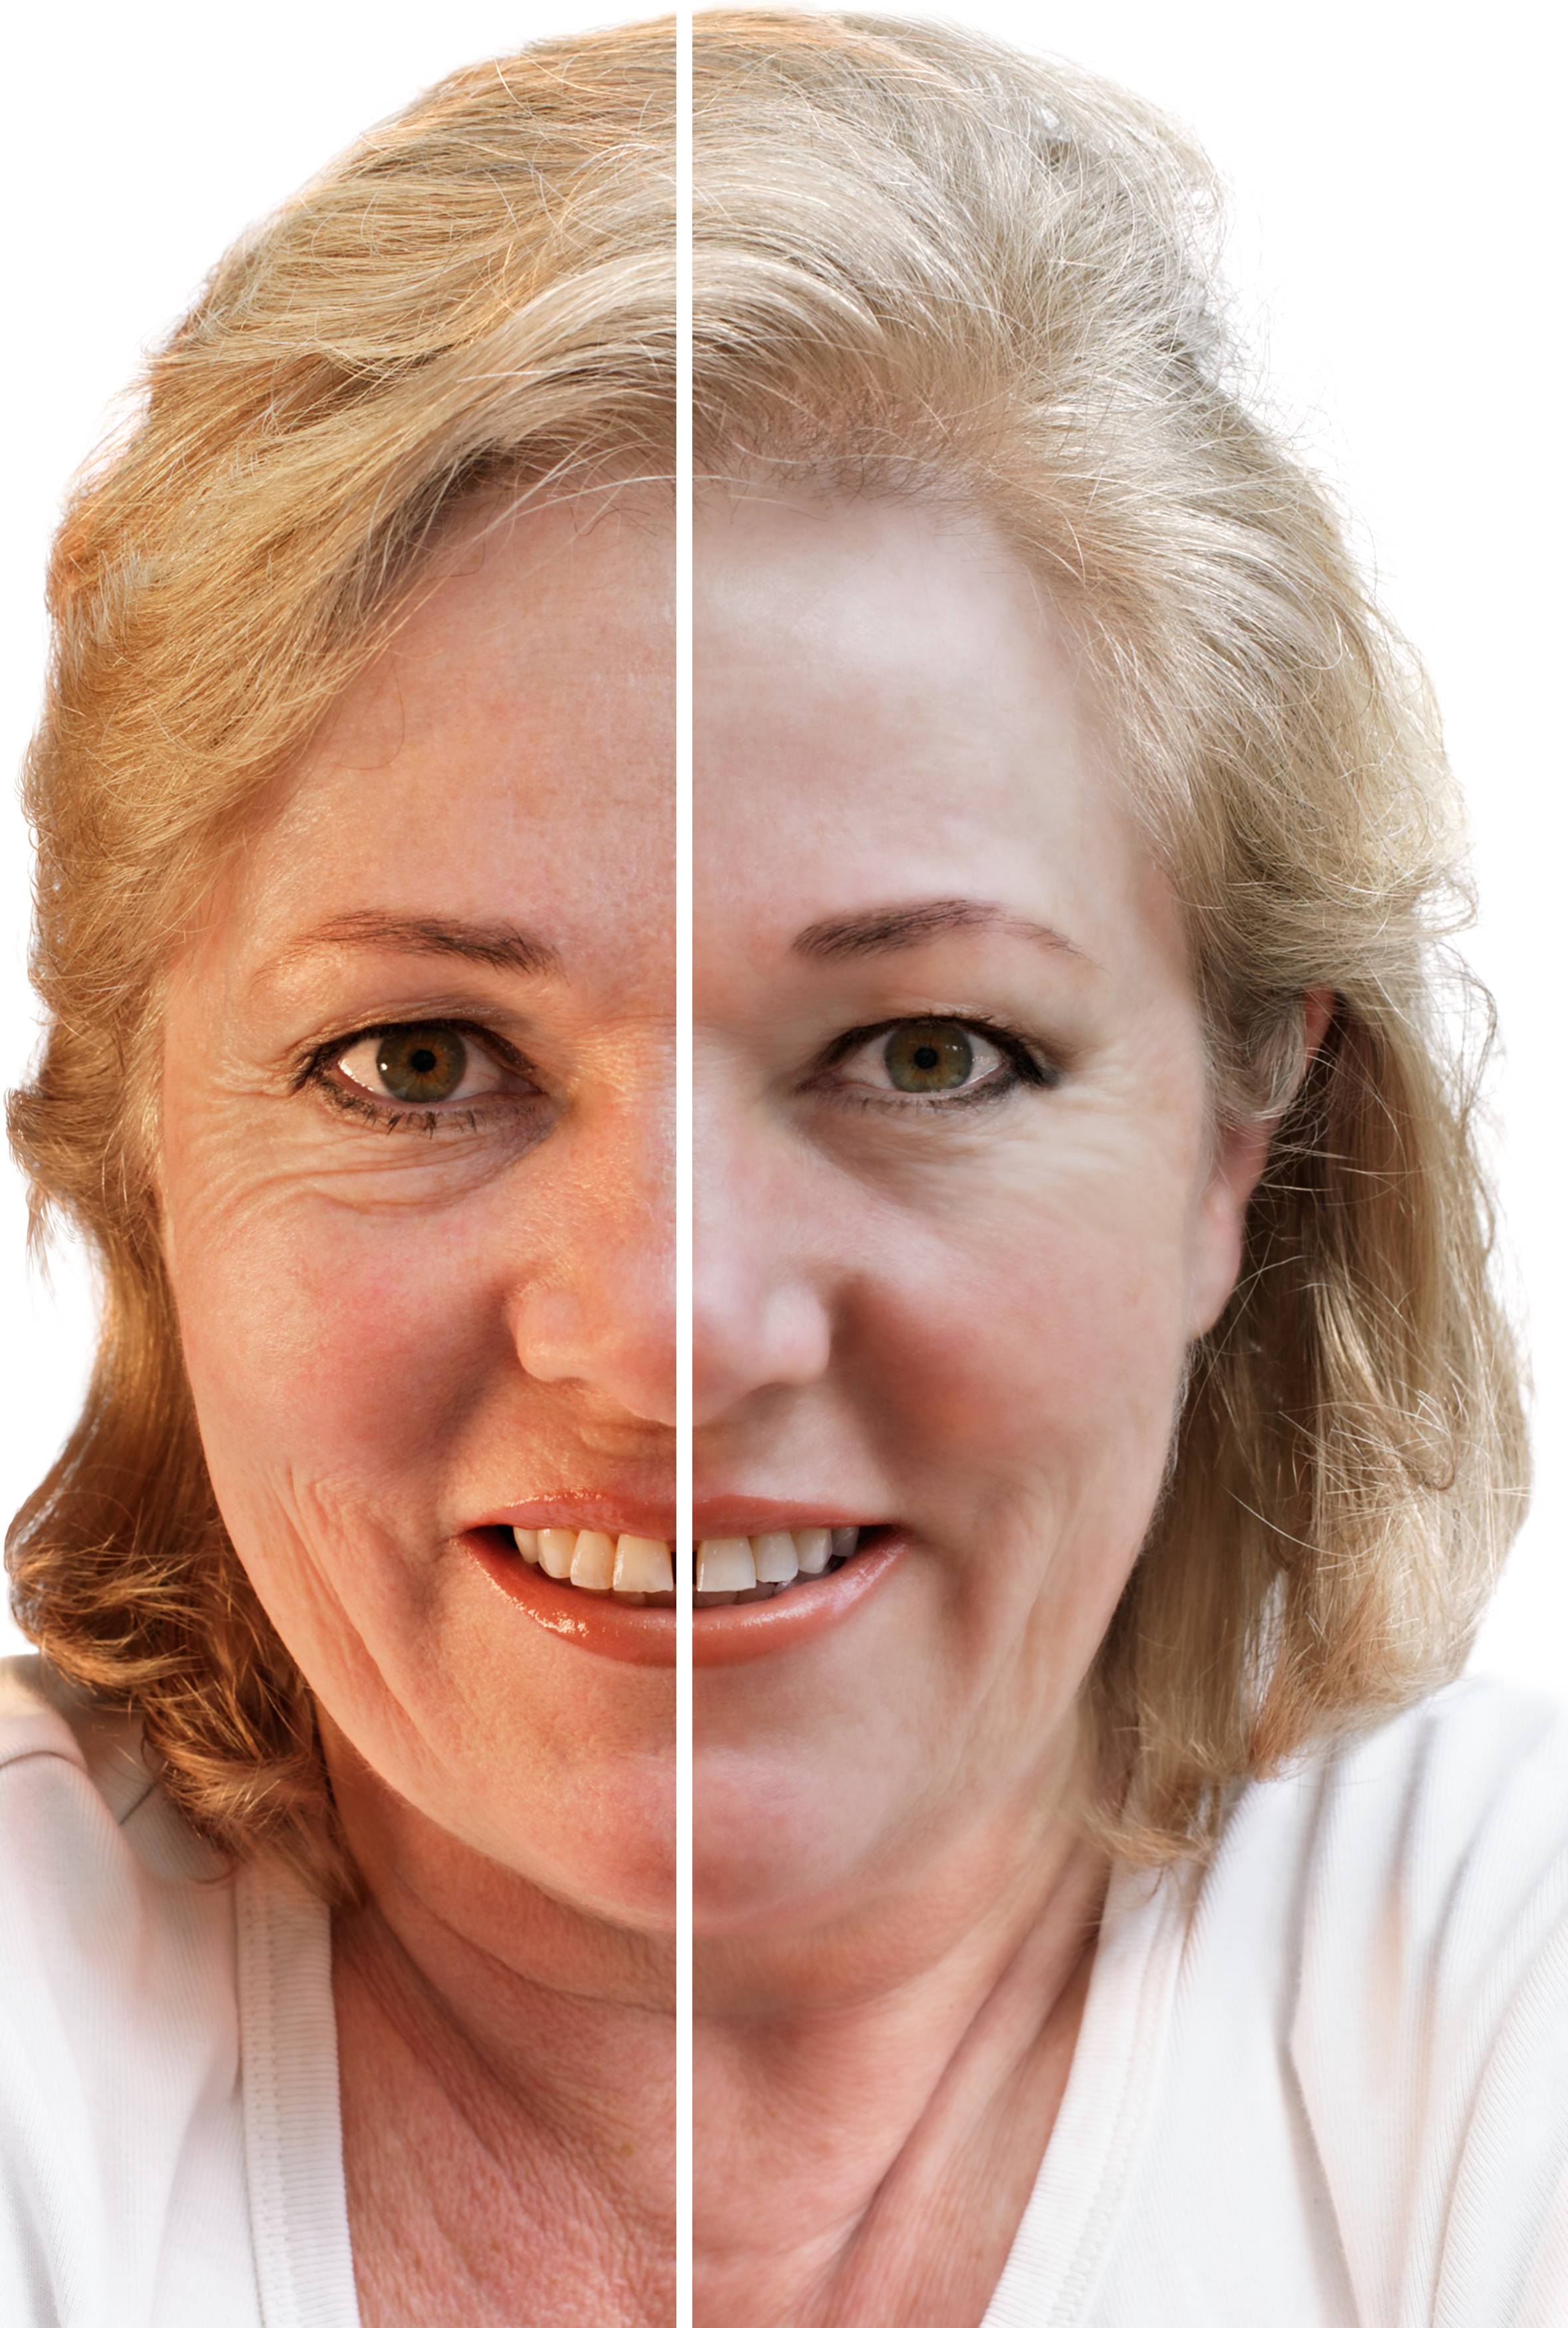 Сахарное лицо до и после отказа фото